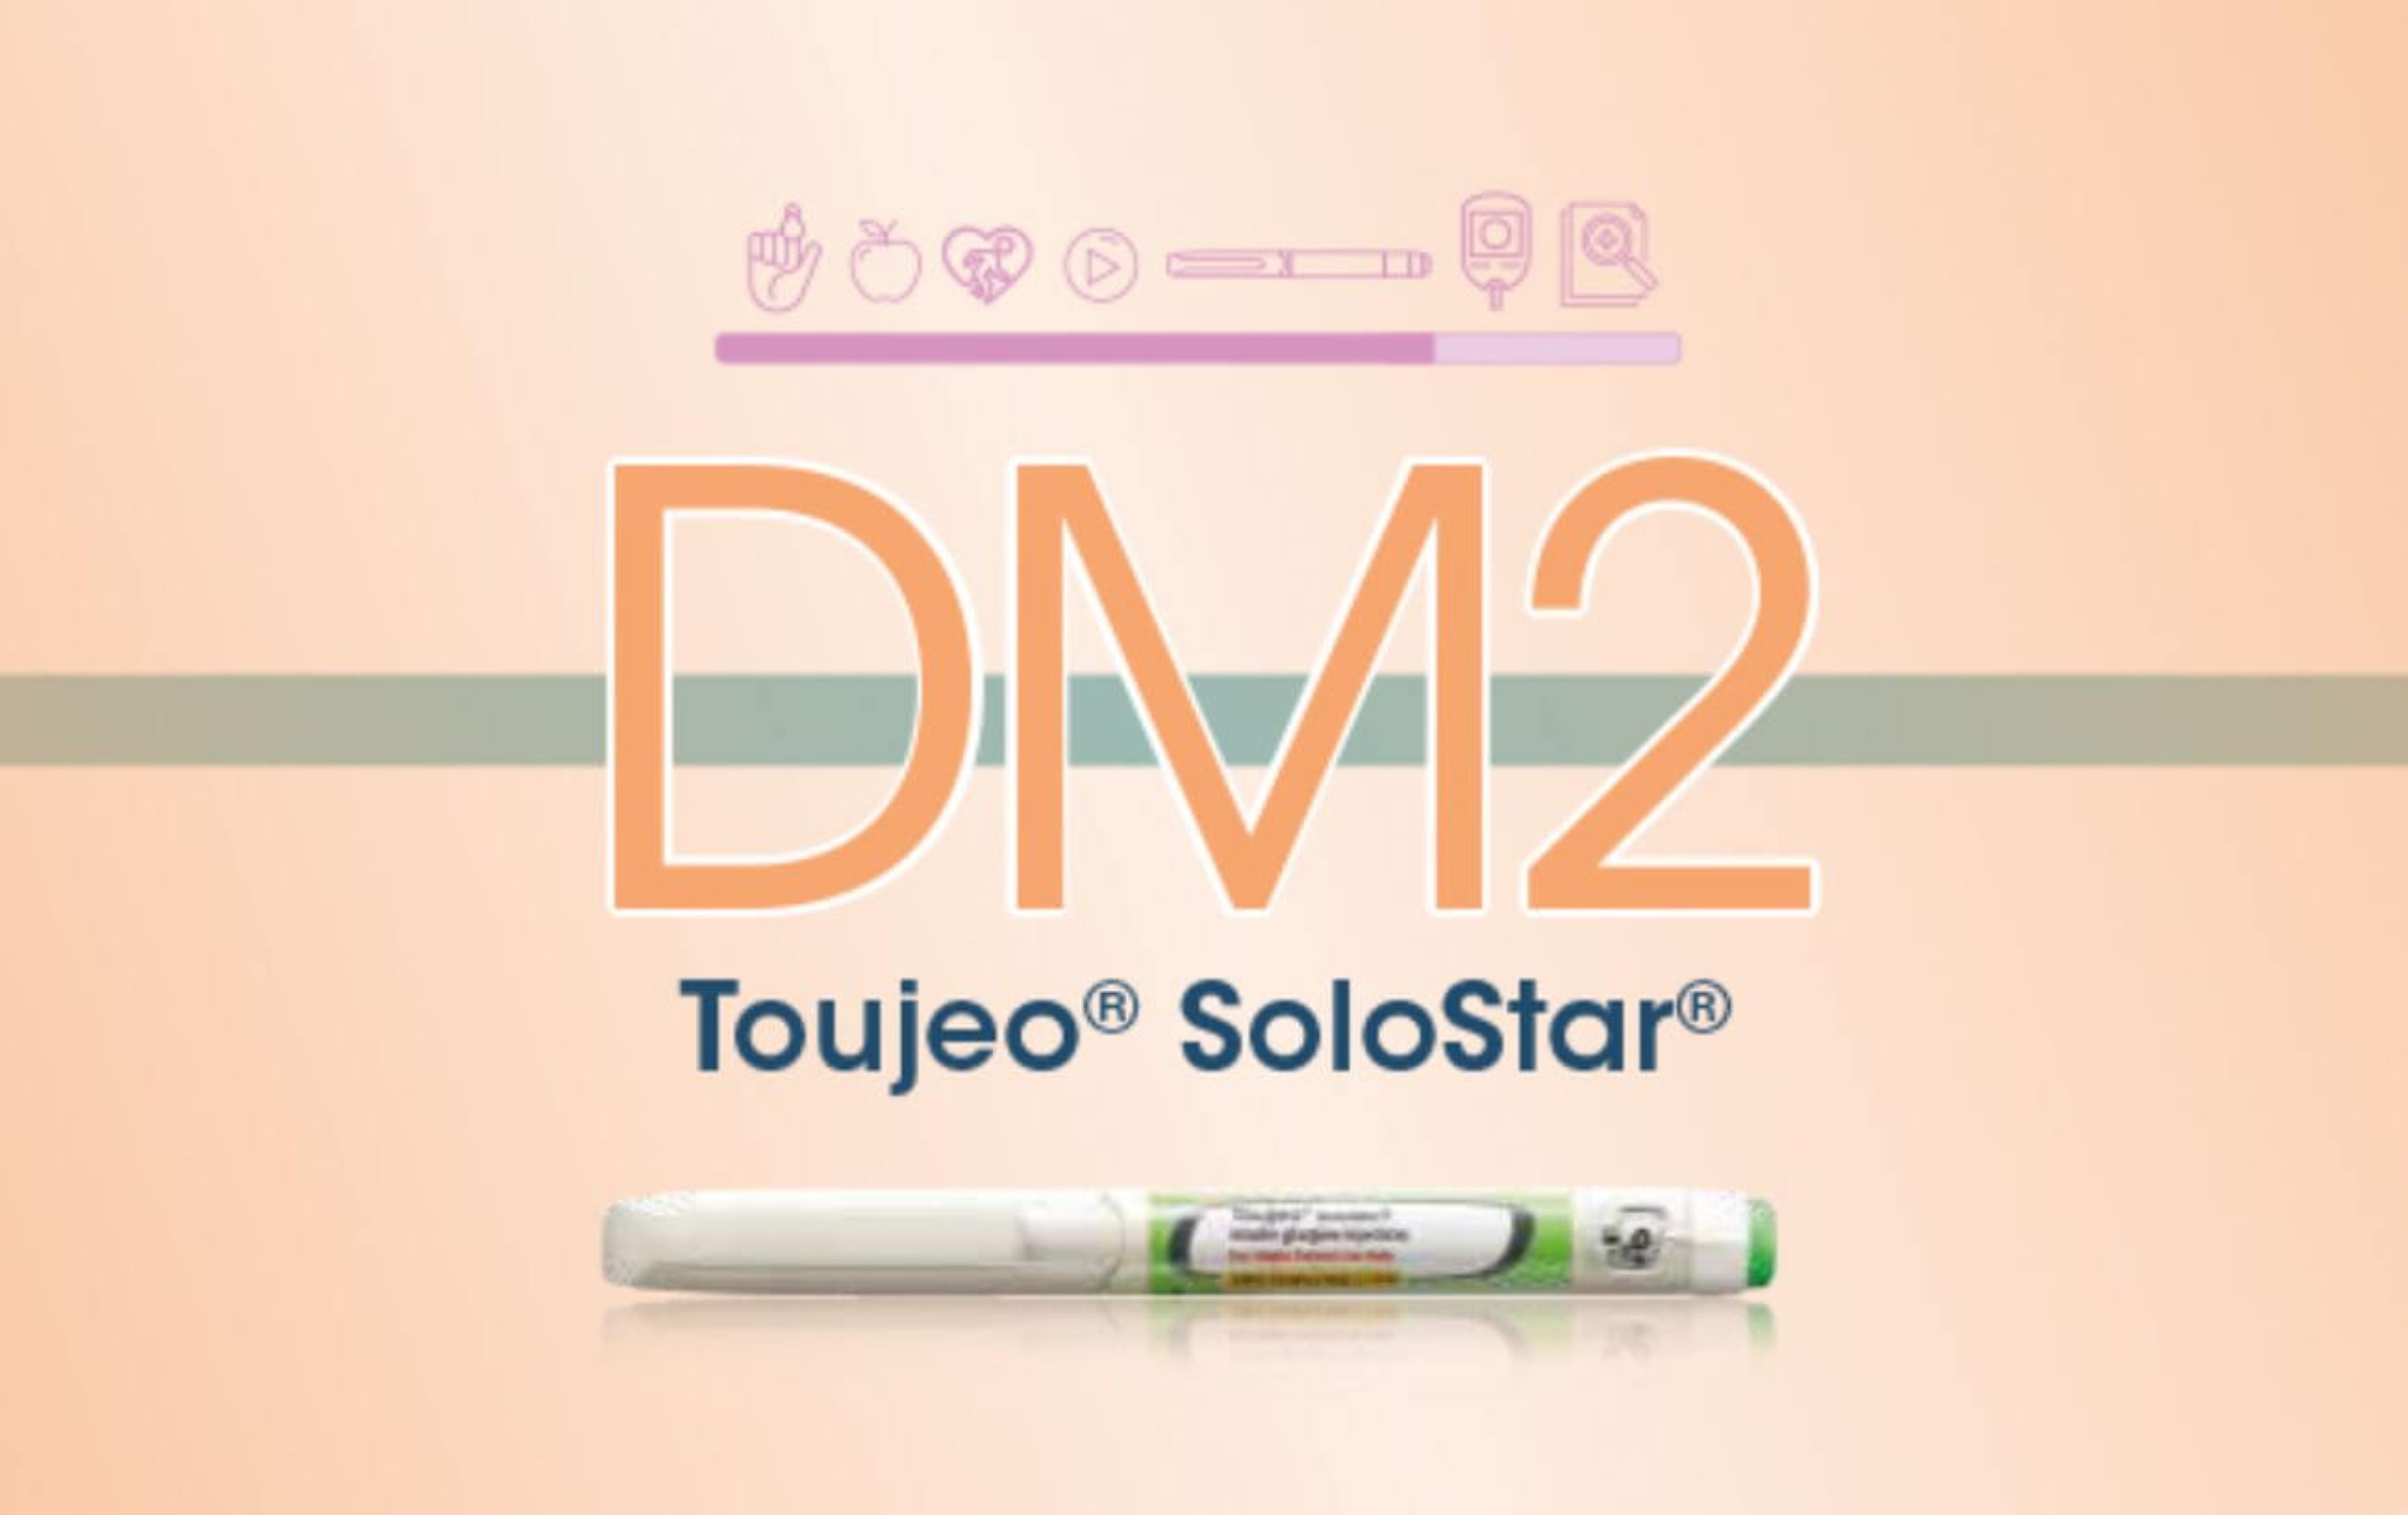 Kit educativo para personas con Diabetes tipo 2 en tratamiento con Toujeo® SoloStar®